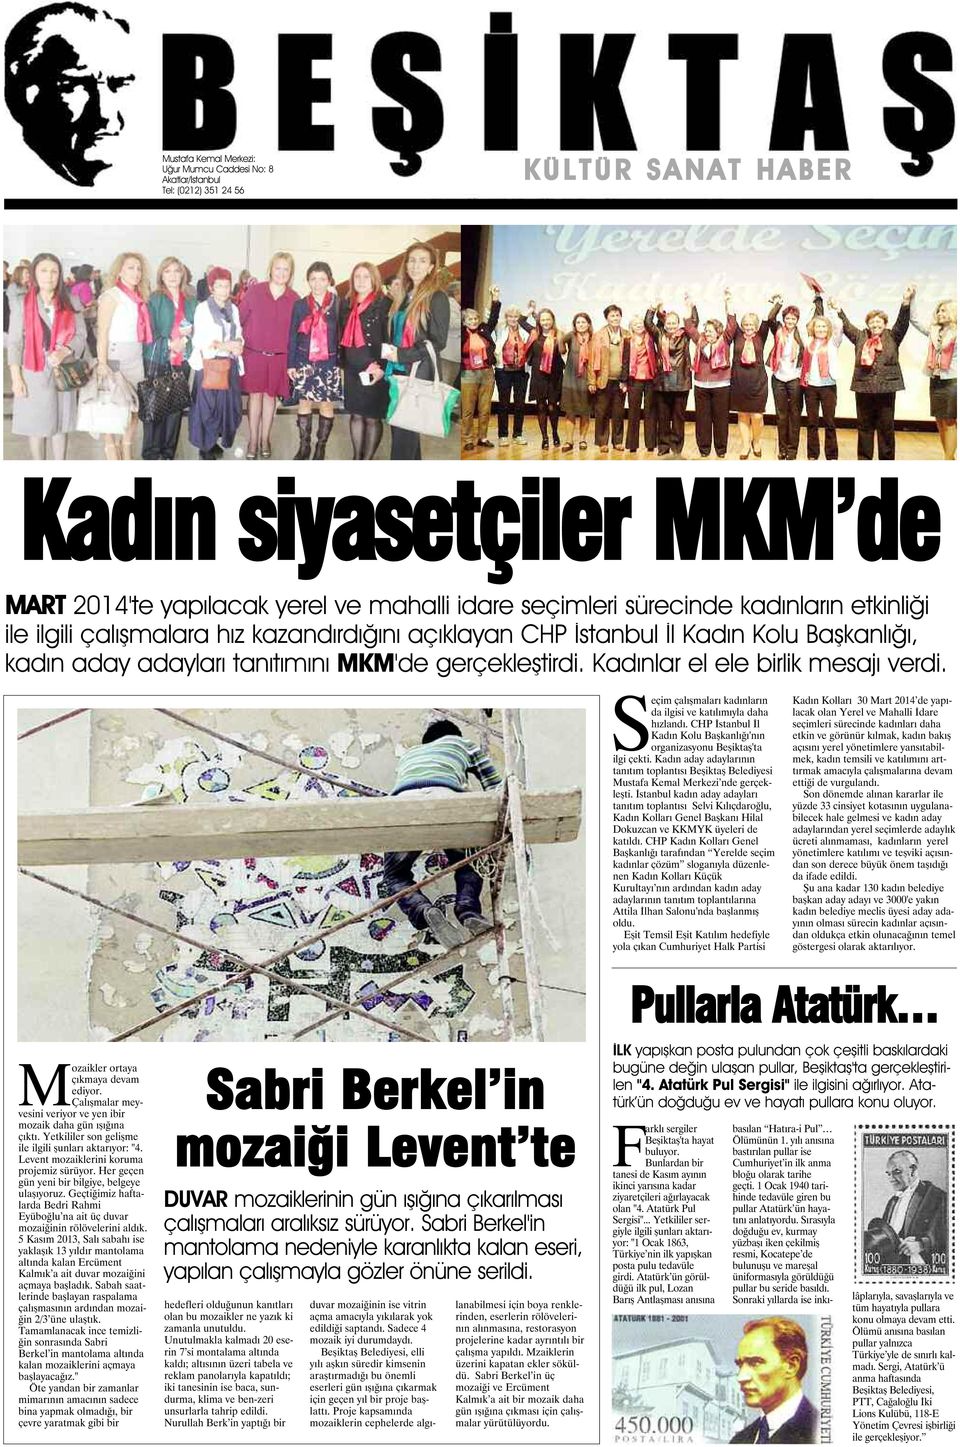 Kadınlar el ele birlik mesajı verdi. Seçim çalışmaları kadınların da ilgisi ve katılımıyla daha hızlandı. CHP İstanbul İl Kadın Kolu Başkanlığı'nın organizasyonu Beşiktaş'ta ilgi çekti.